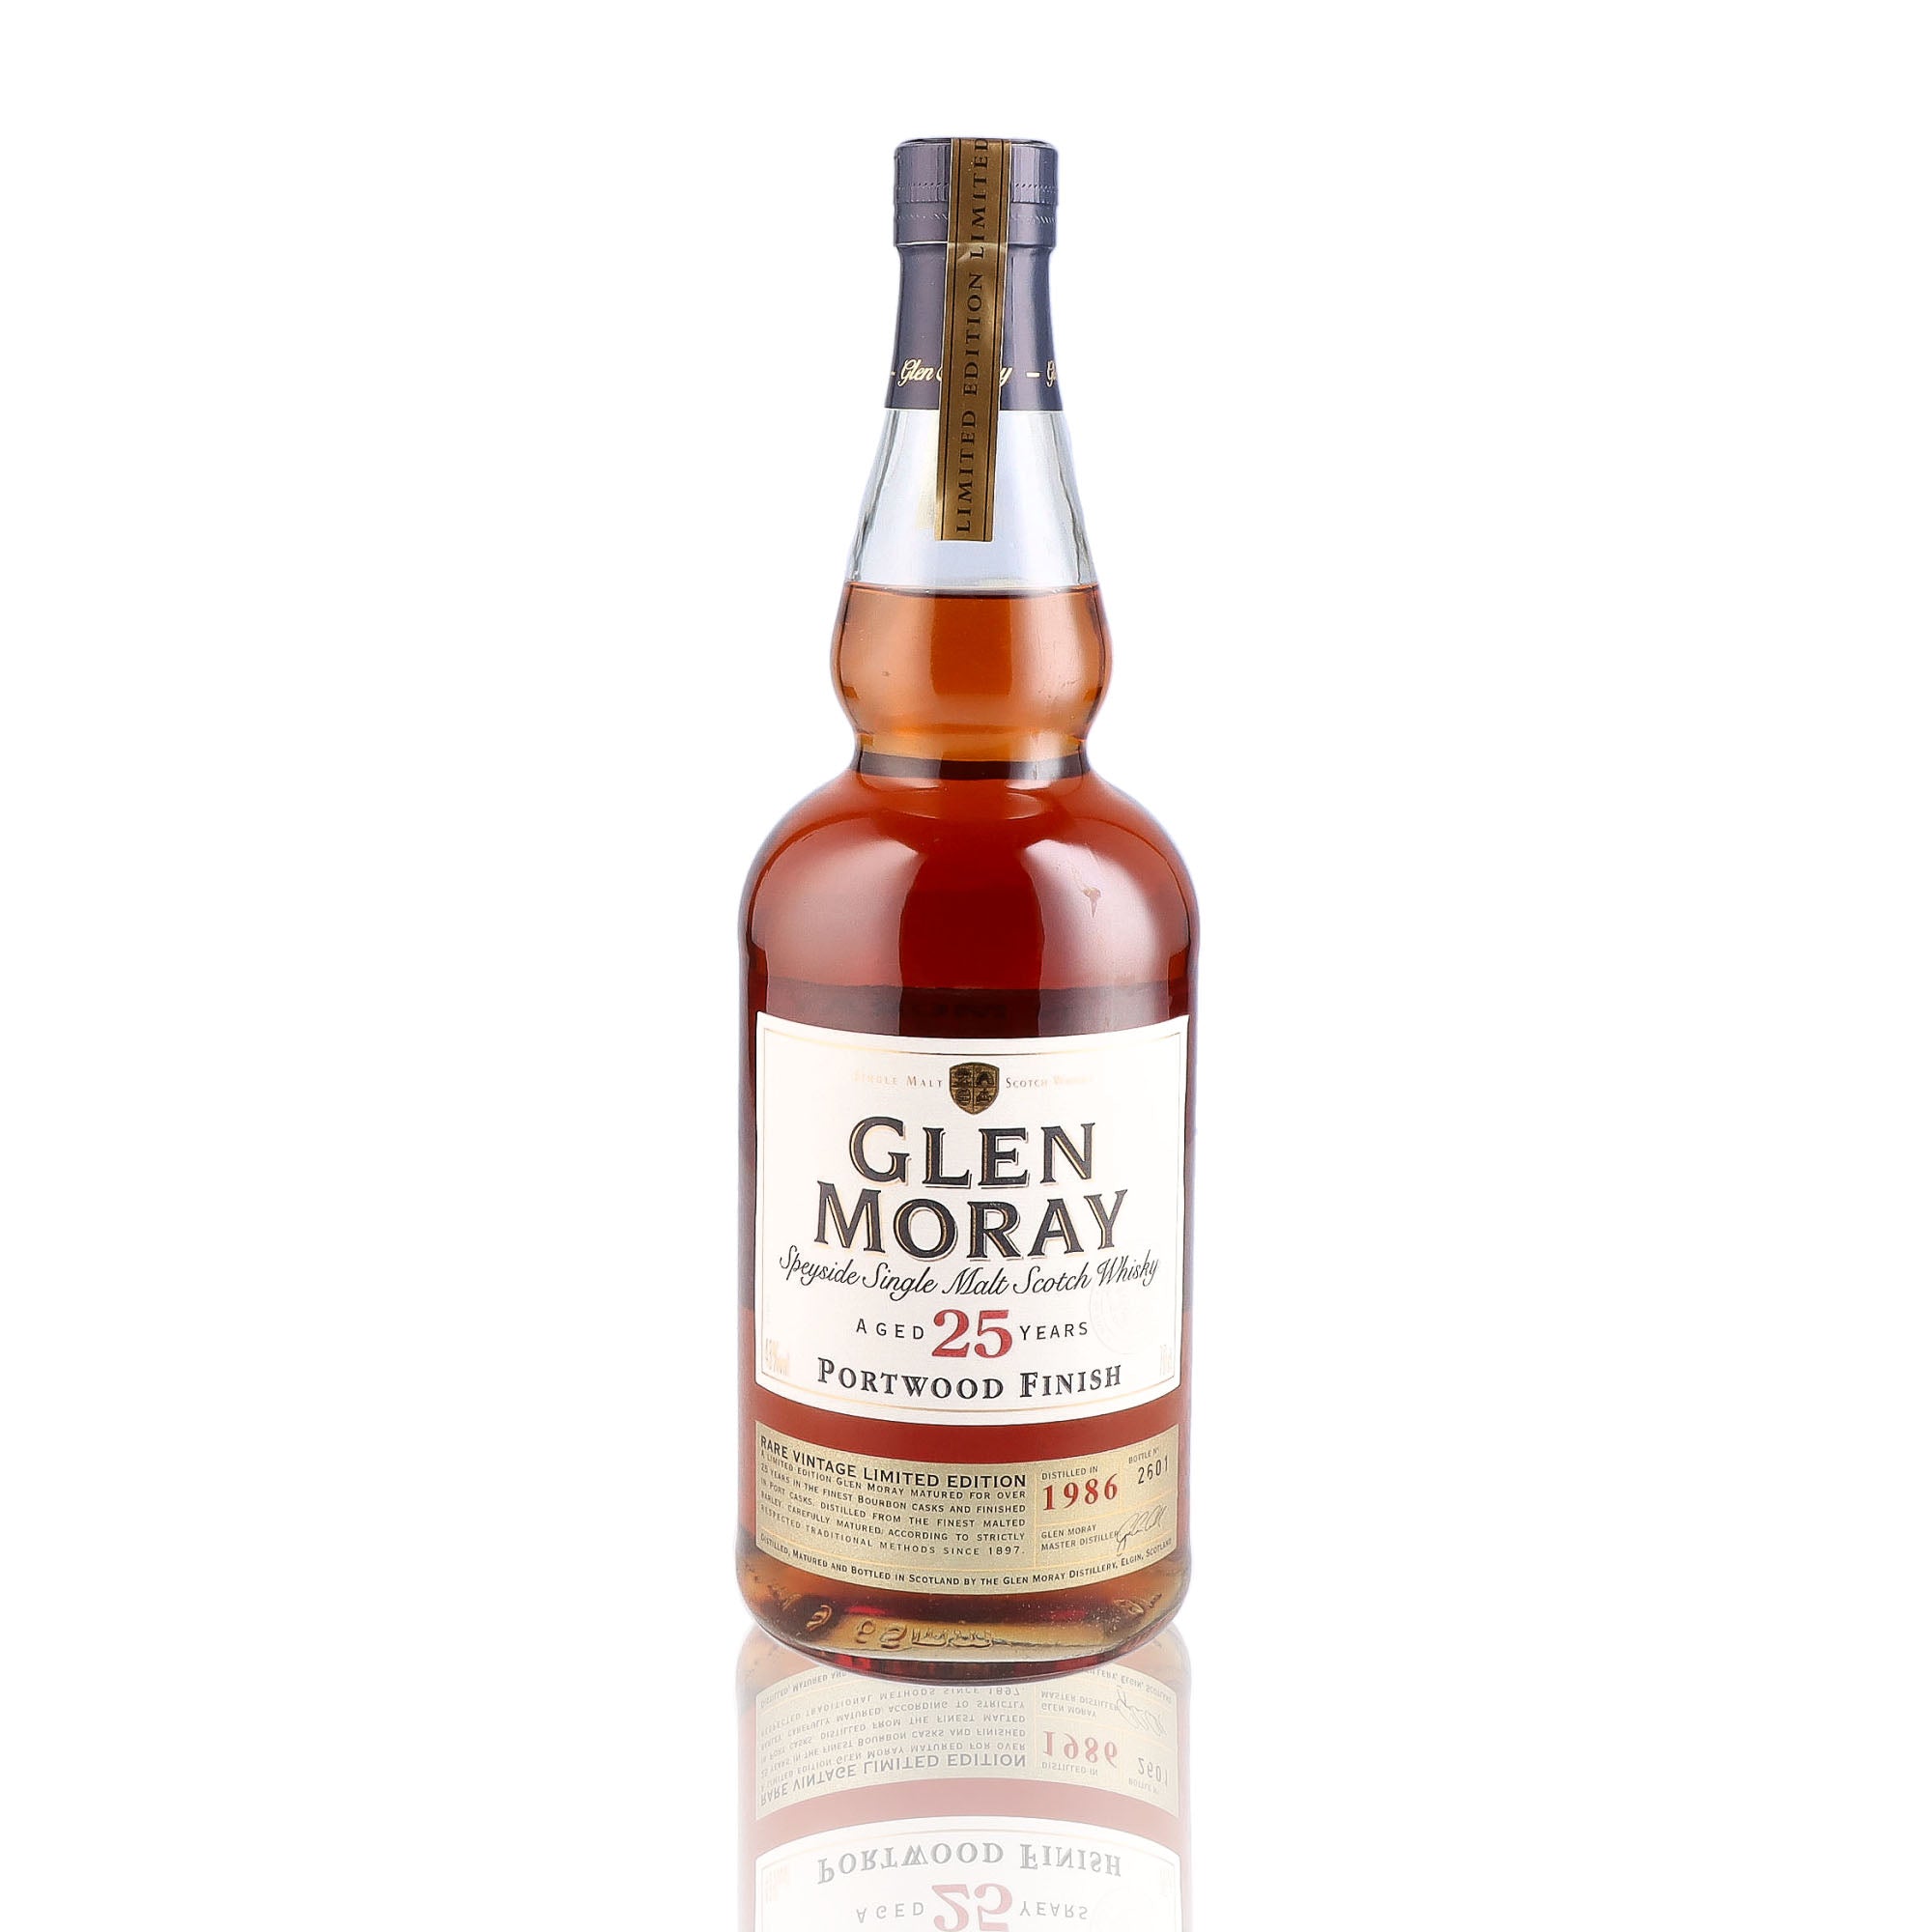 Une bouteille de Scotch Whisky Single Malt de la marque Glen Moray, nommée Portwood Finish, 25 ans d'âge.